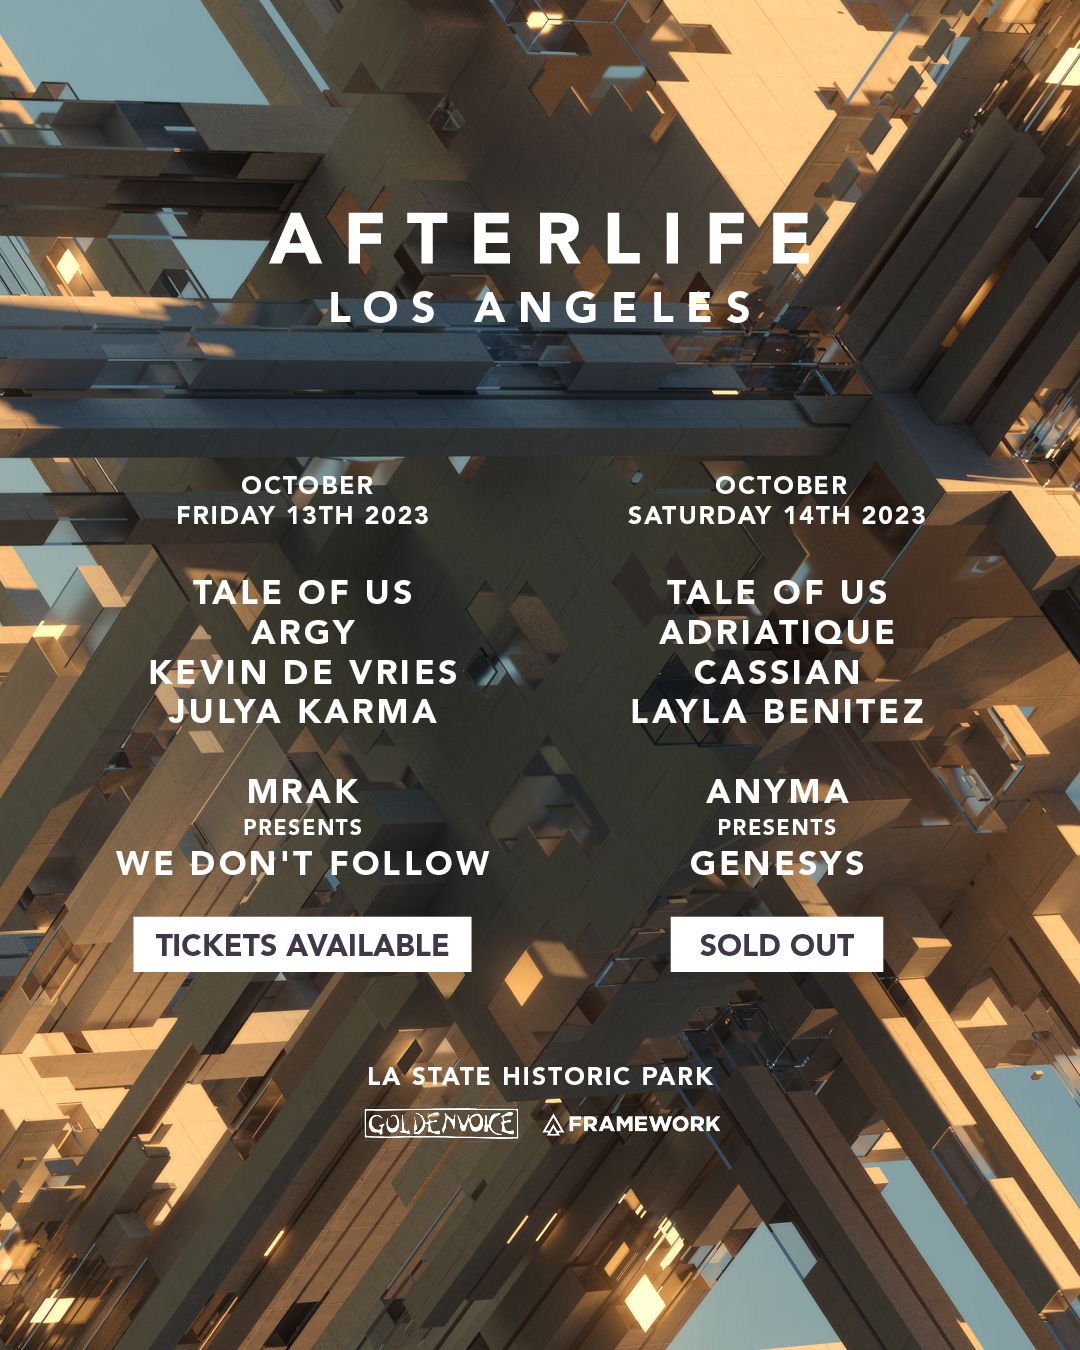 Framework to deliver Afterlife's Los Angeles debut over 2 days at LA State  Historic Park in October - EARMILK